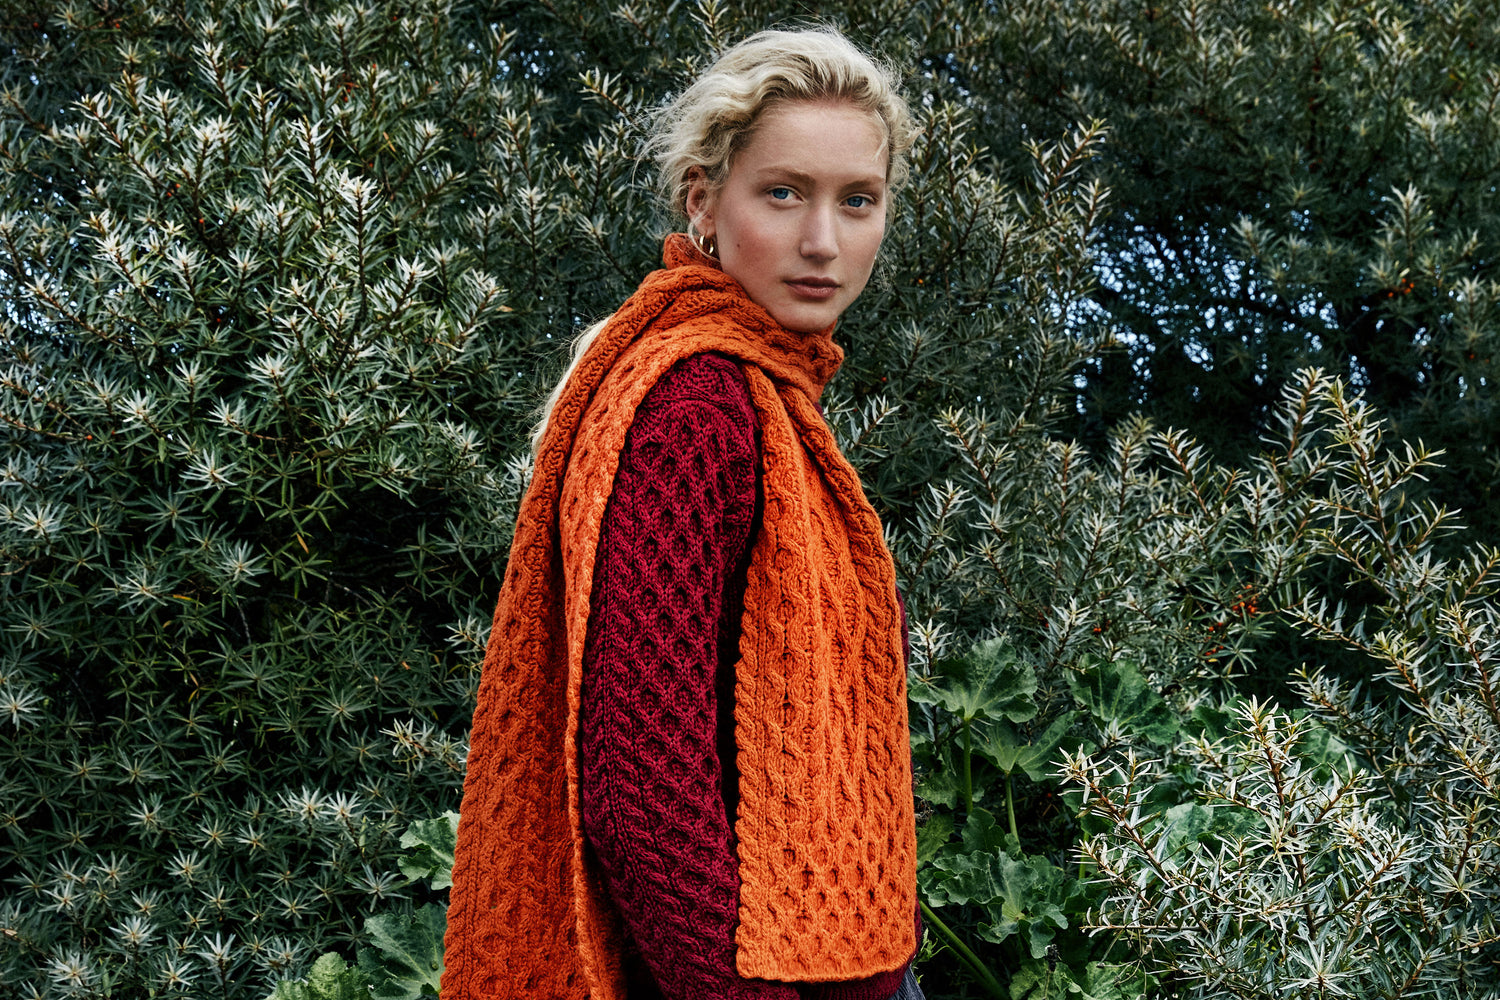 IrelandsEye Knitwear Blasket Honeycomb Stitch Aran Sweater in Claret and Luxe Aran Scarf in Terracotta